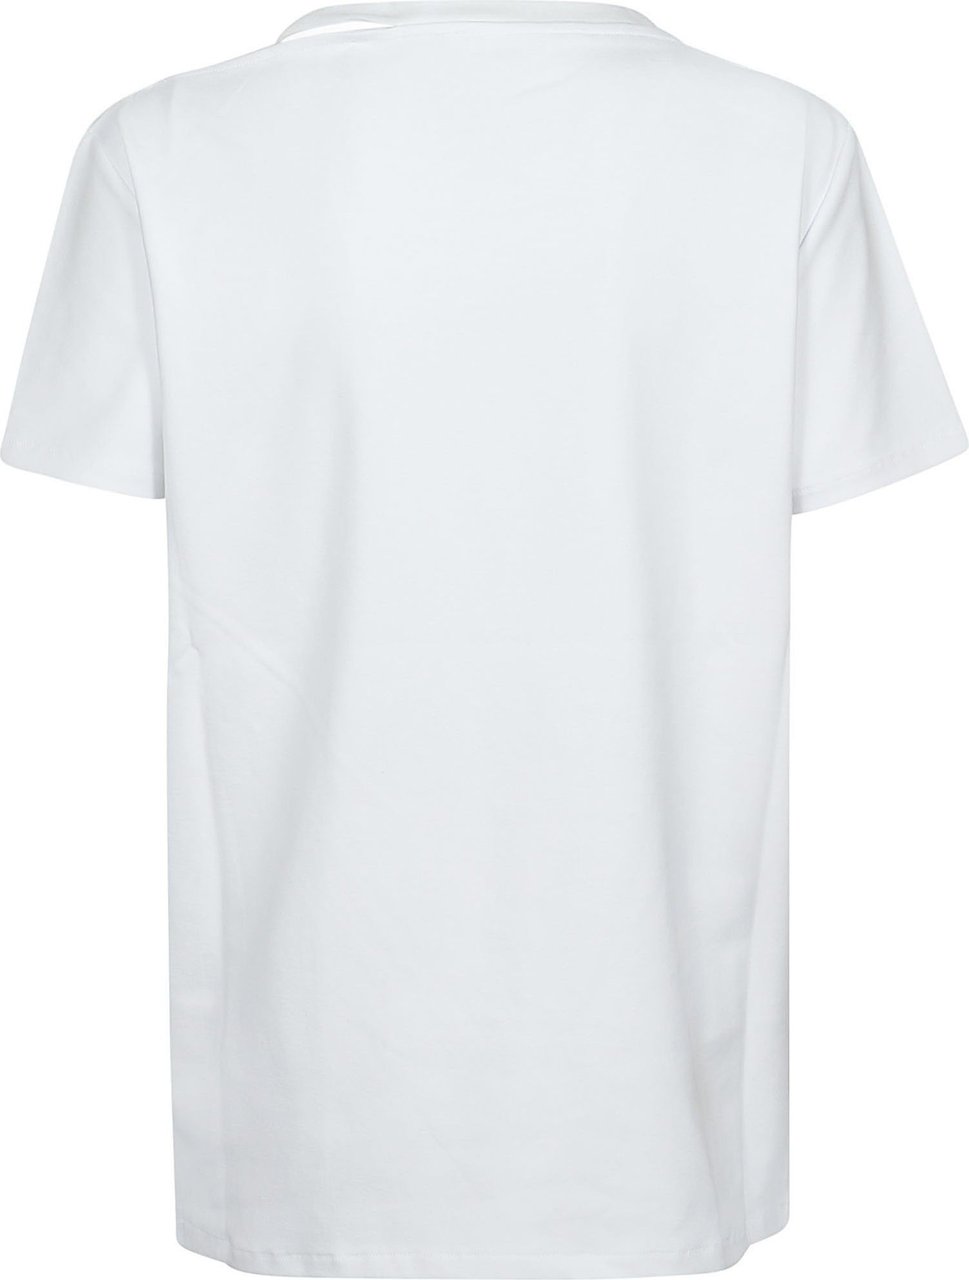 Iro Auranie T-shirt White Wit